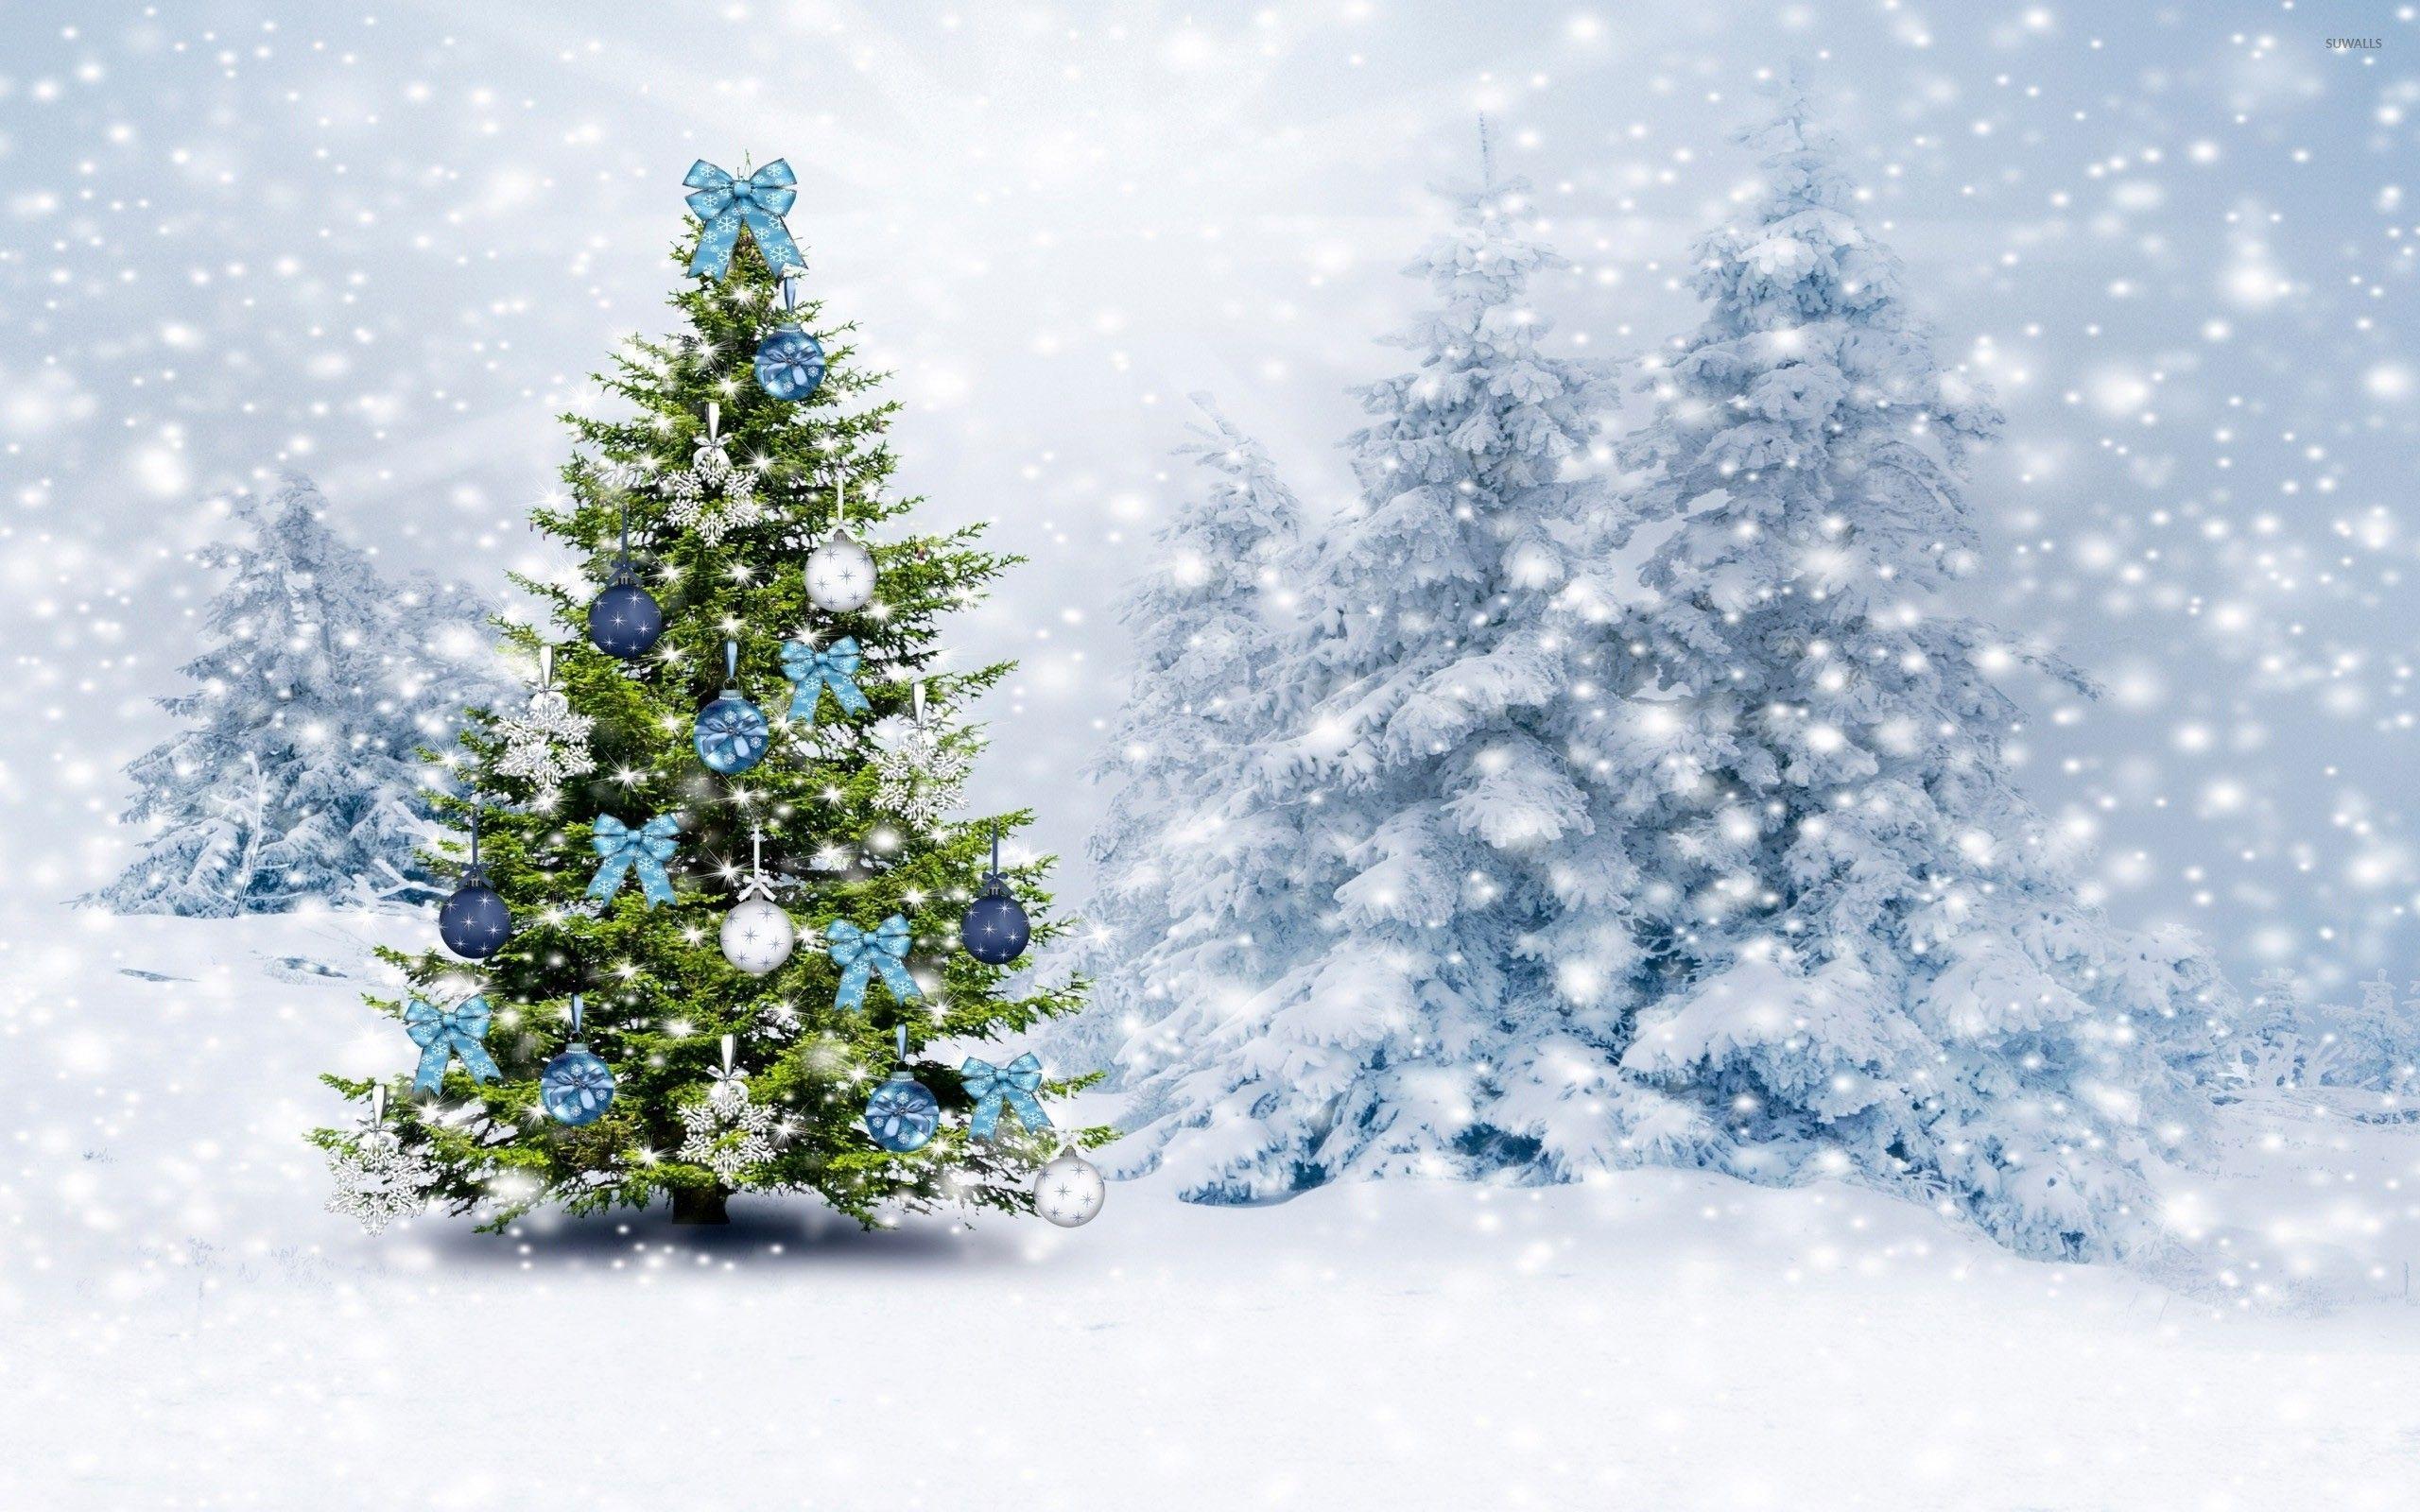 White Christmas Tree Wallpapers - Top Hình Ảnh Đẹp